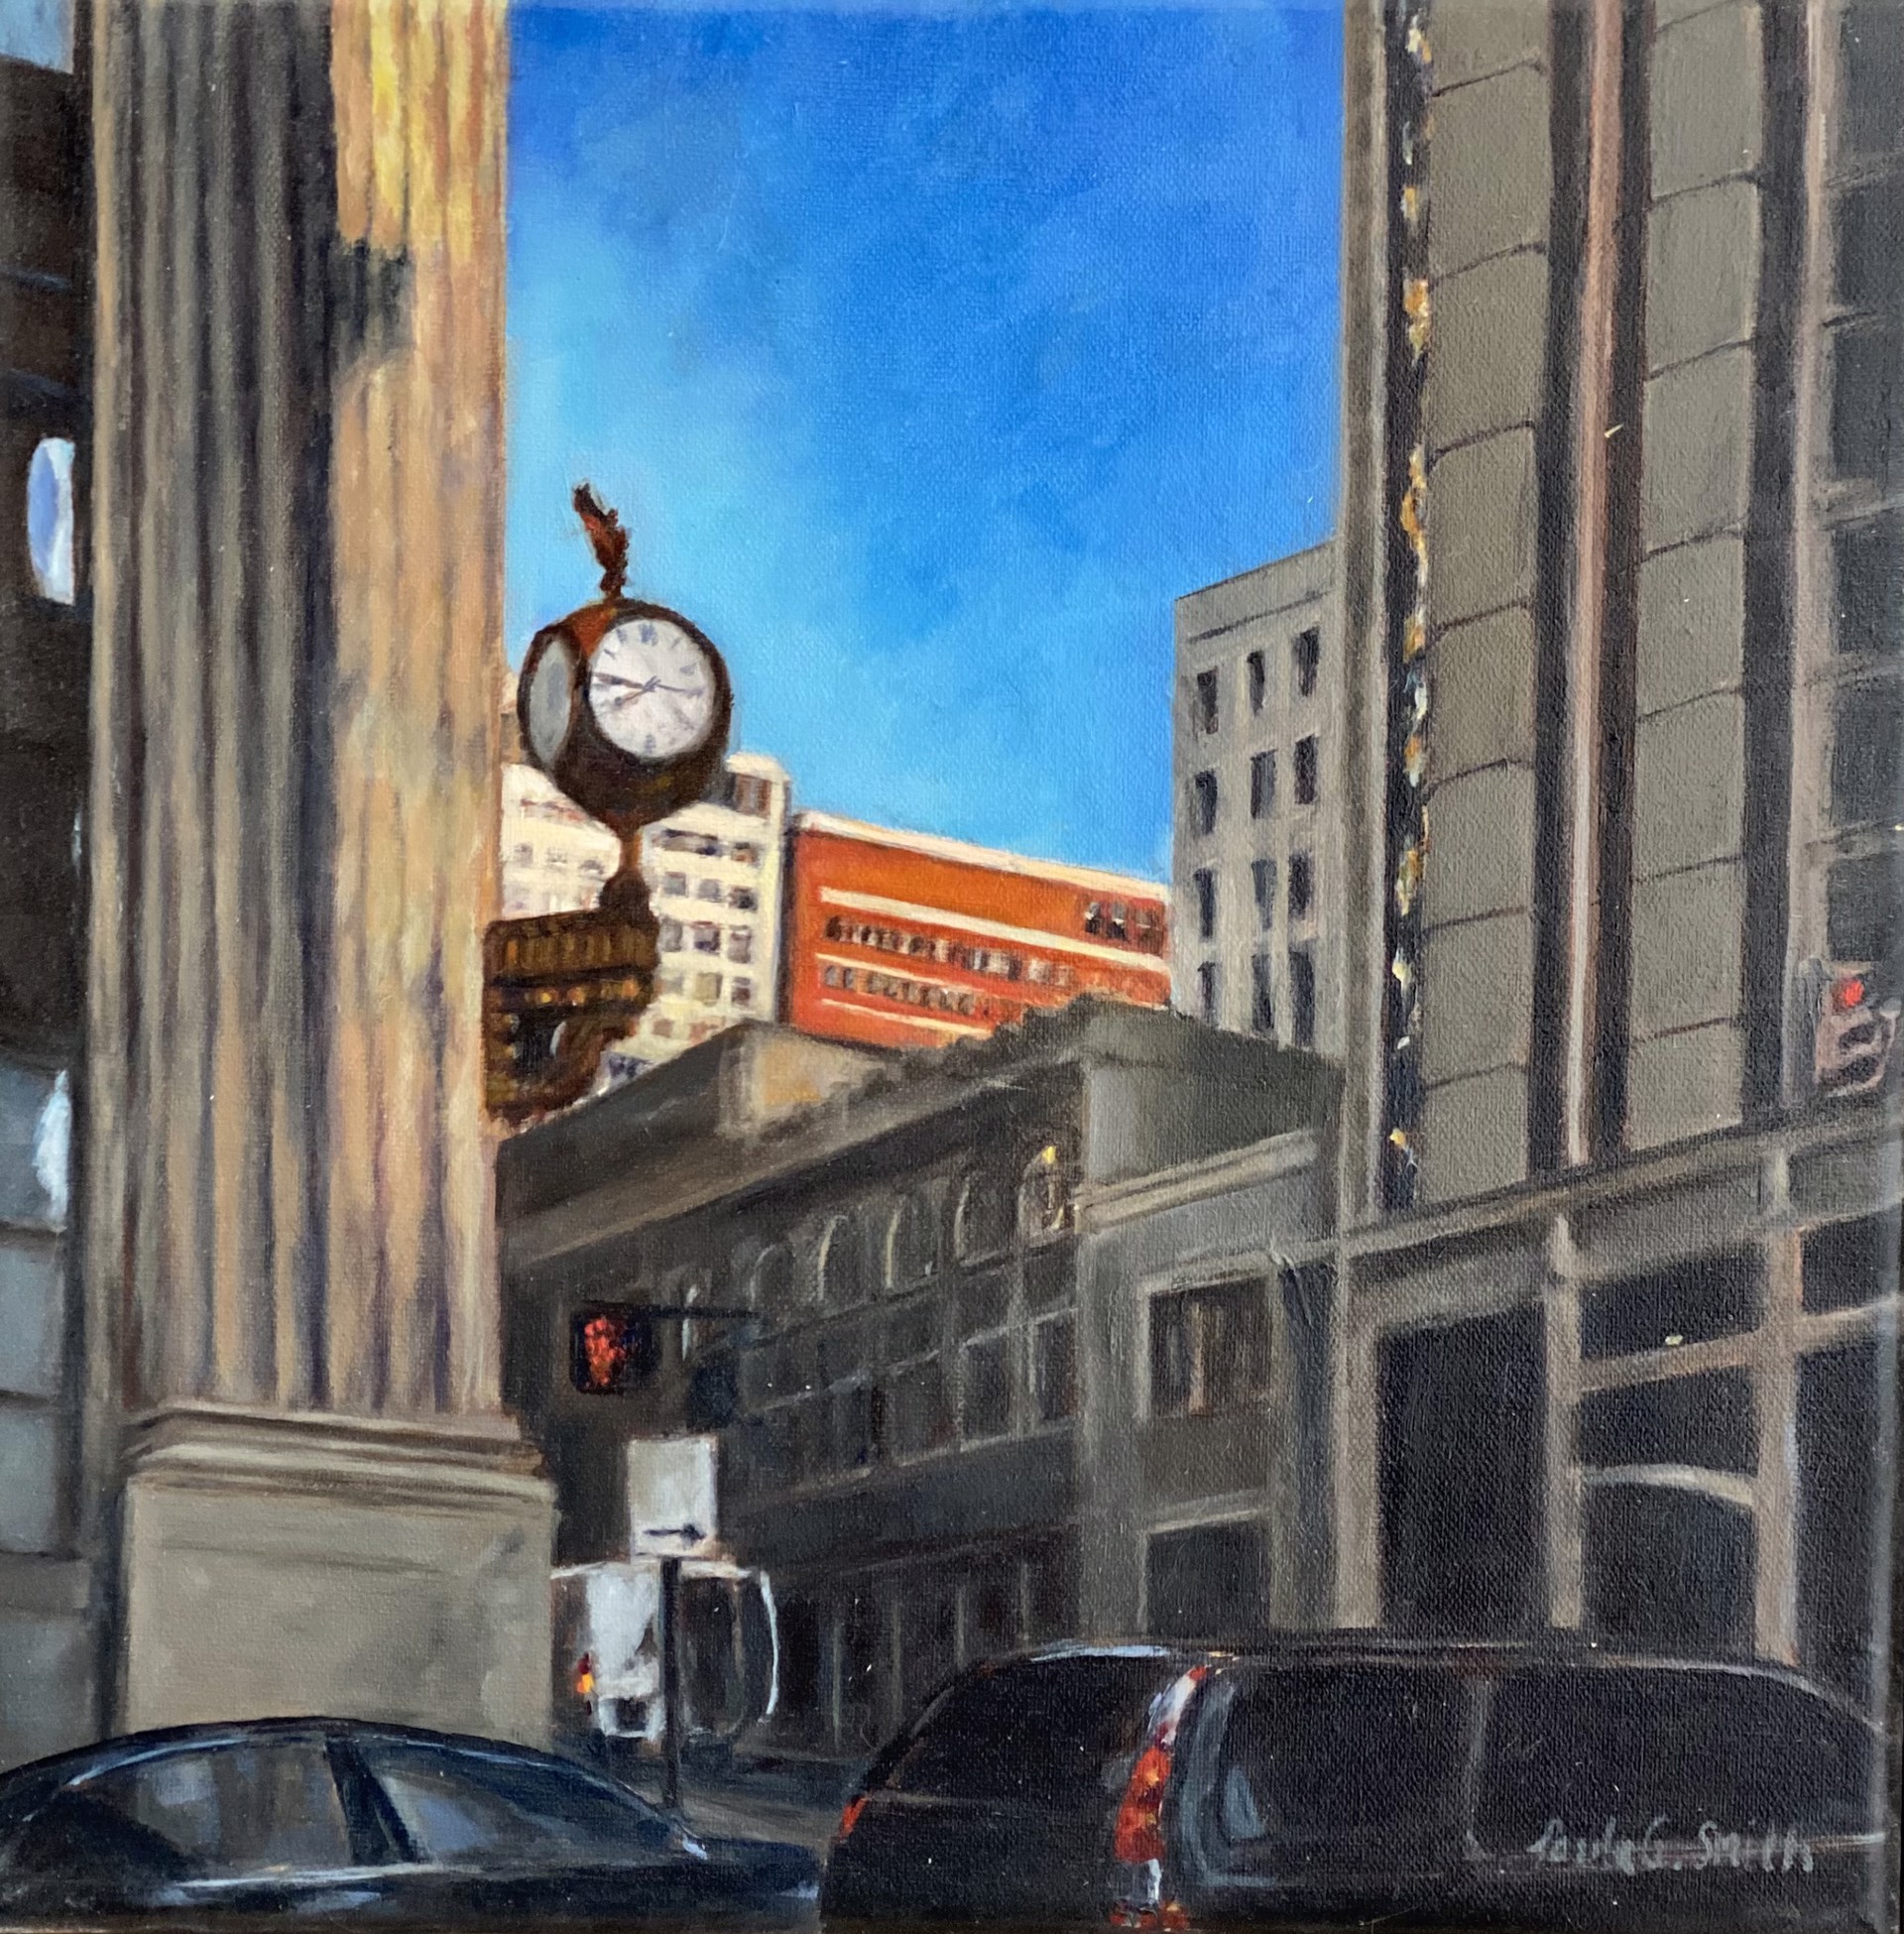 Main Street Clock Tower by Paula Smith